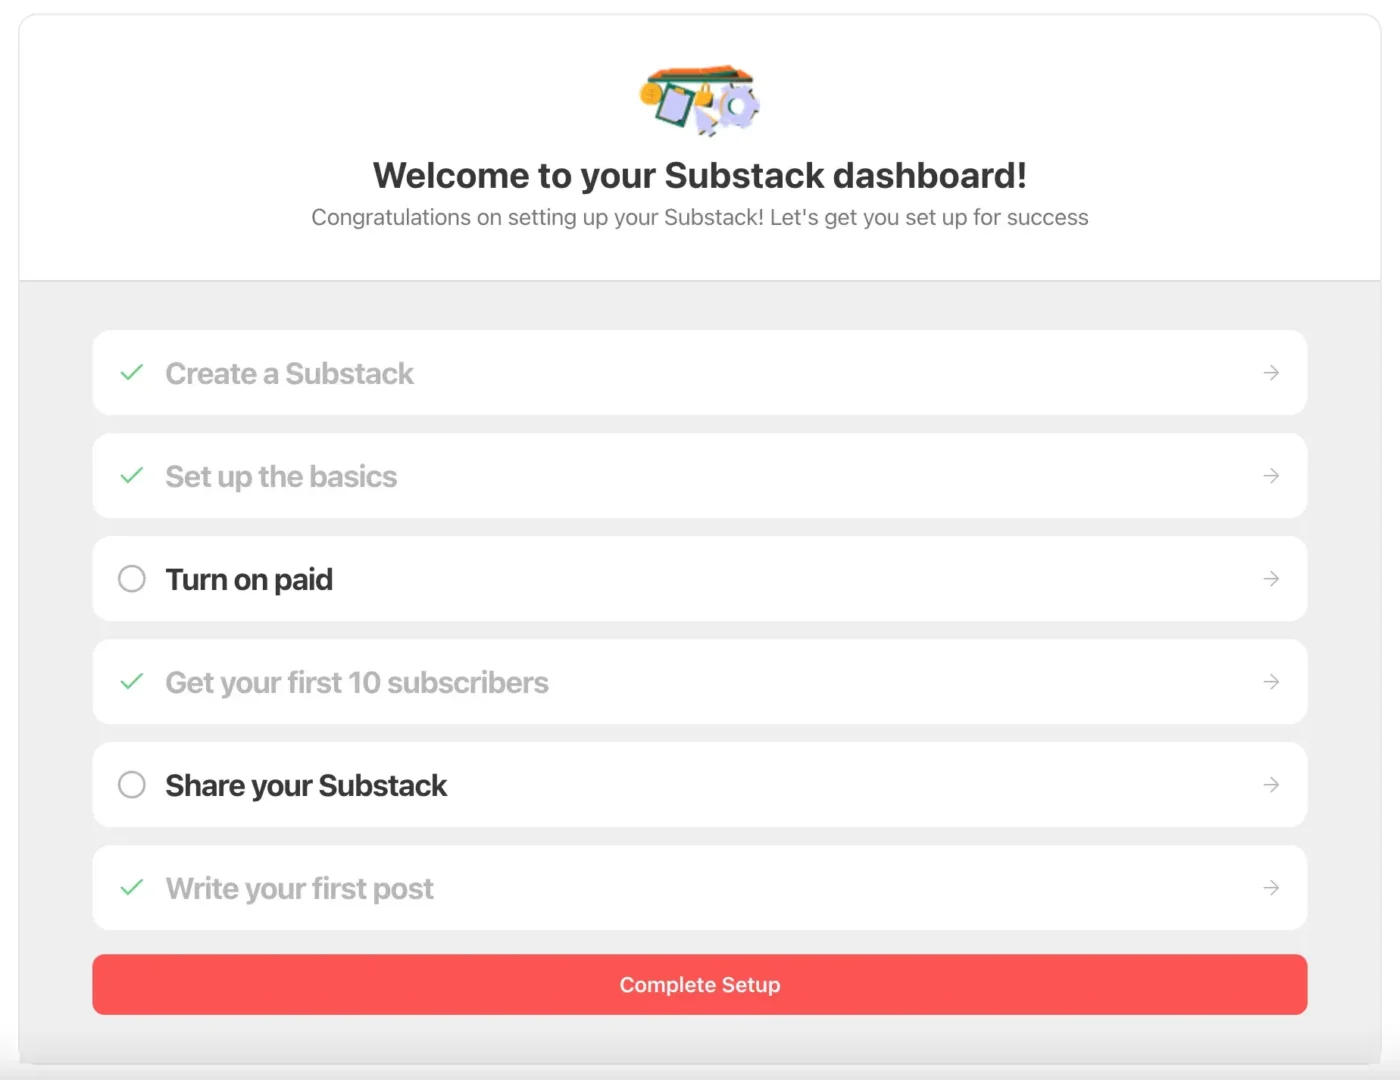 The Substack writer’s dashboard setup tasks.